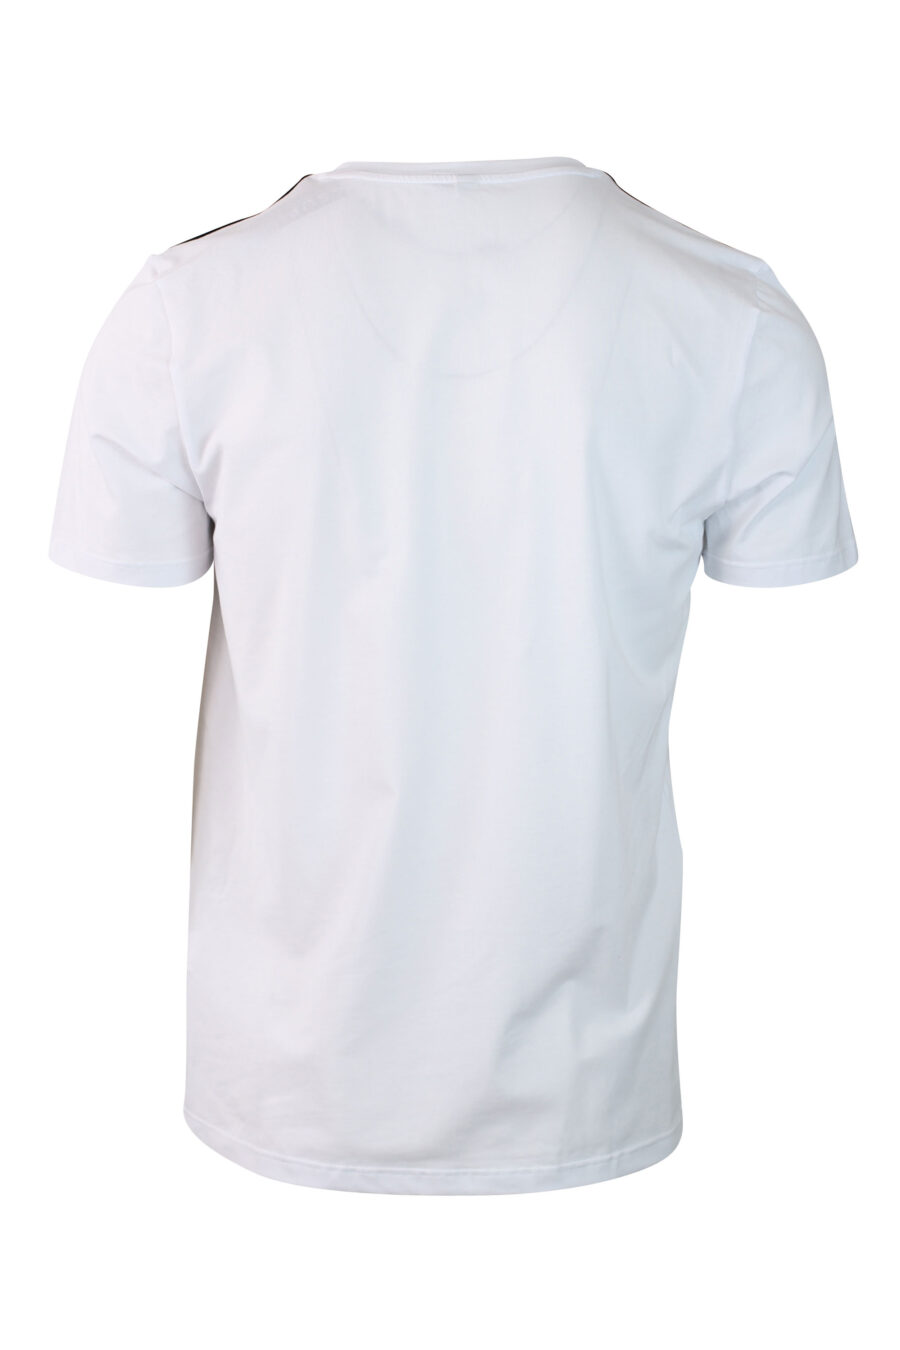 Lot de deux T-shirts blancs avec logo sur l'épaule - IMG 0133